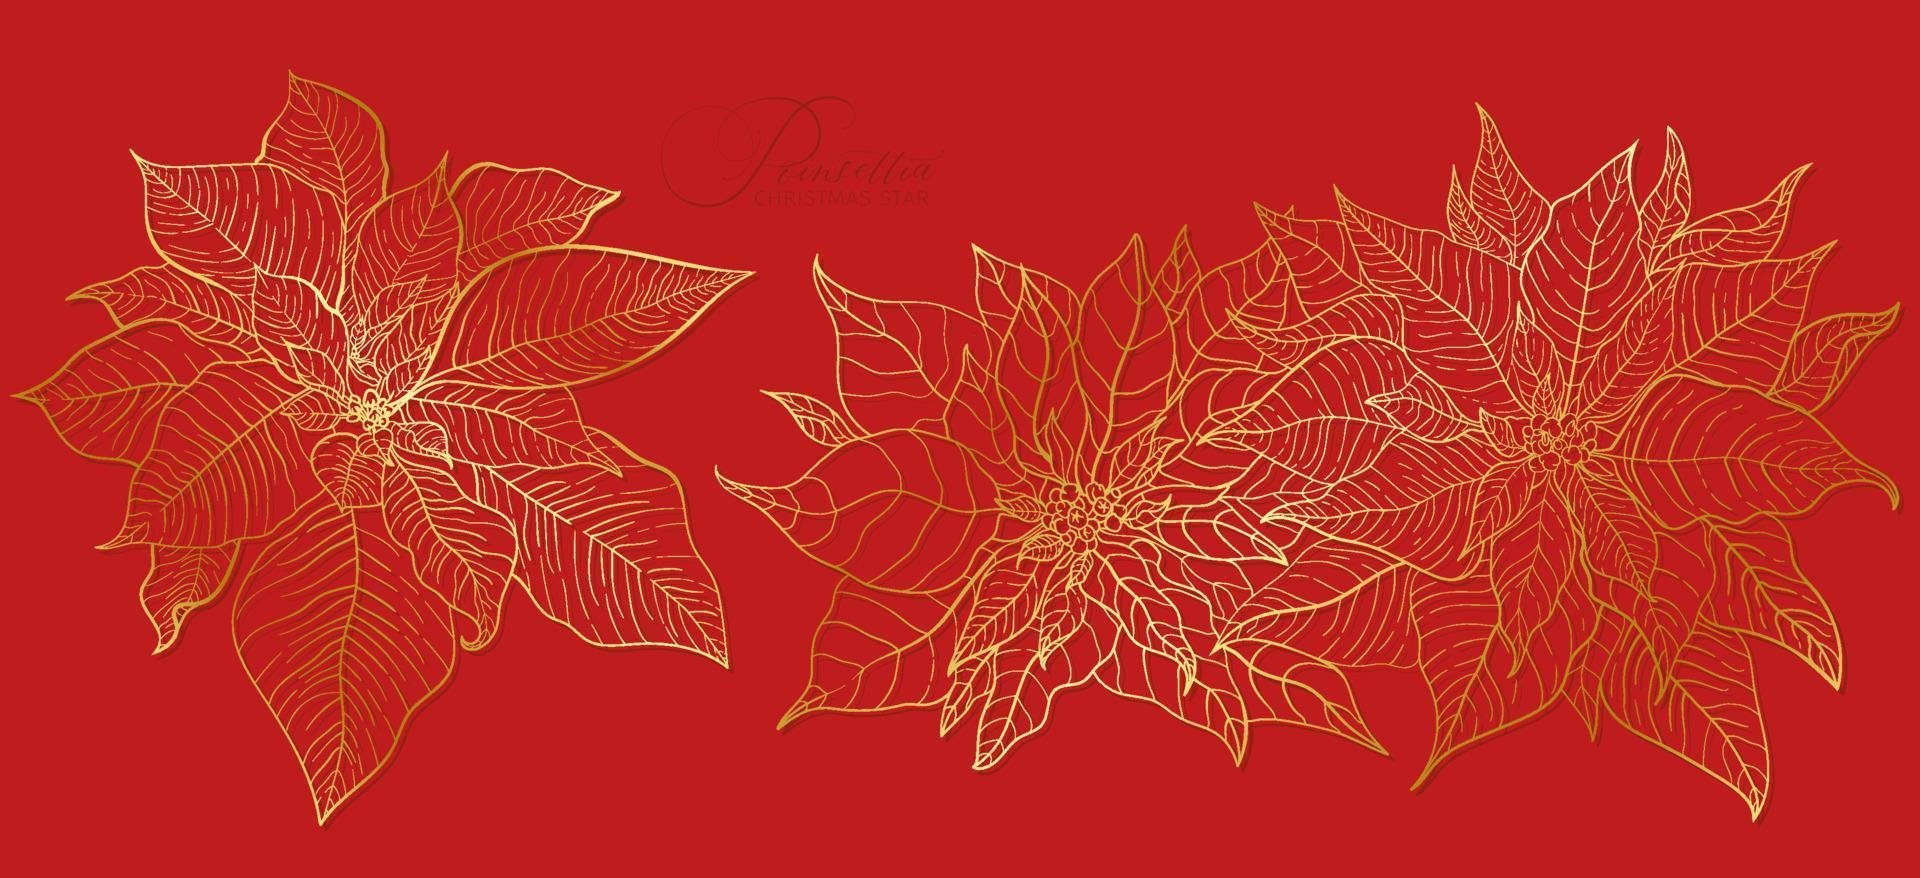 inflorescencia de poinsettia roja en una elegante línea dorada. elementos para decoraciones navideñas y festivas de año nuevo. vector